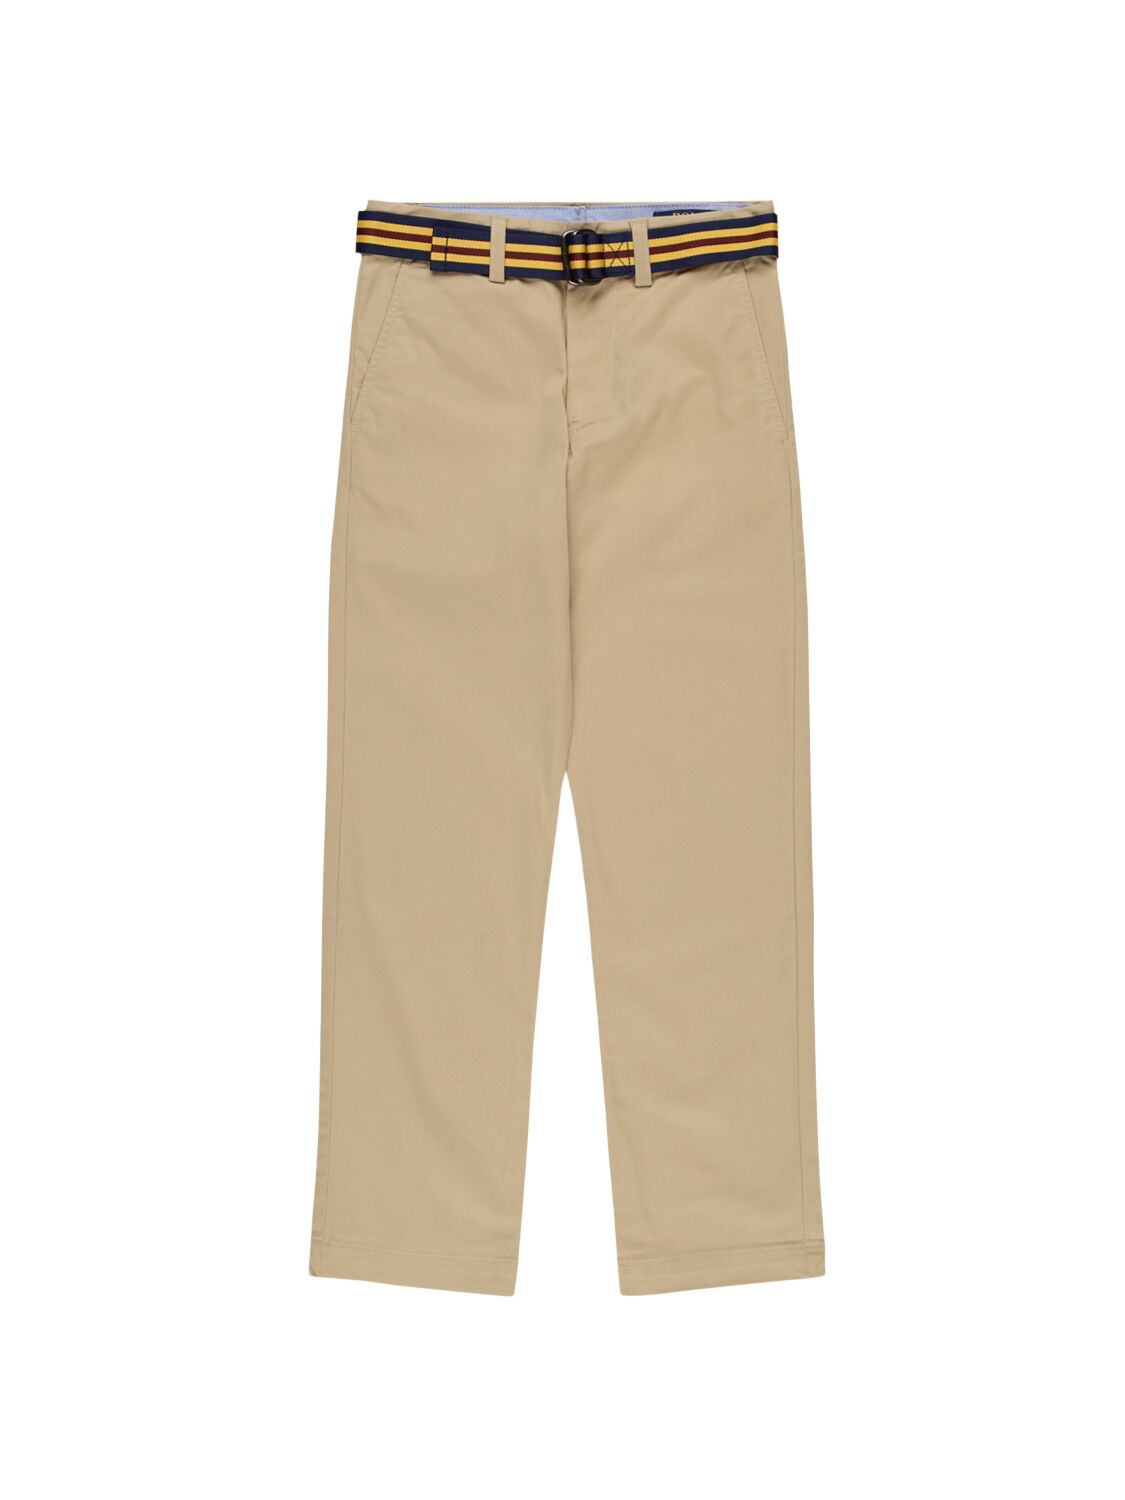 Ralph Lauren Kids' Stretch Cotton Twill Chino Pants W/ Belt In Neutral